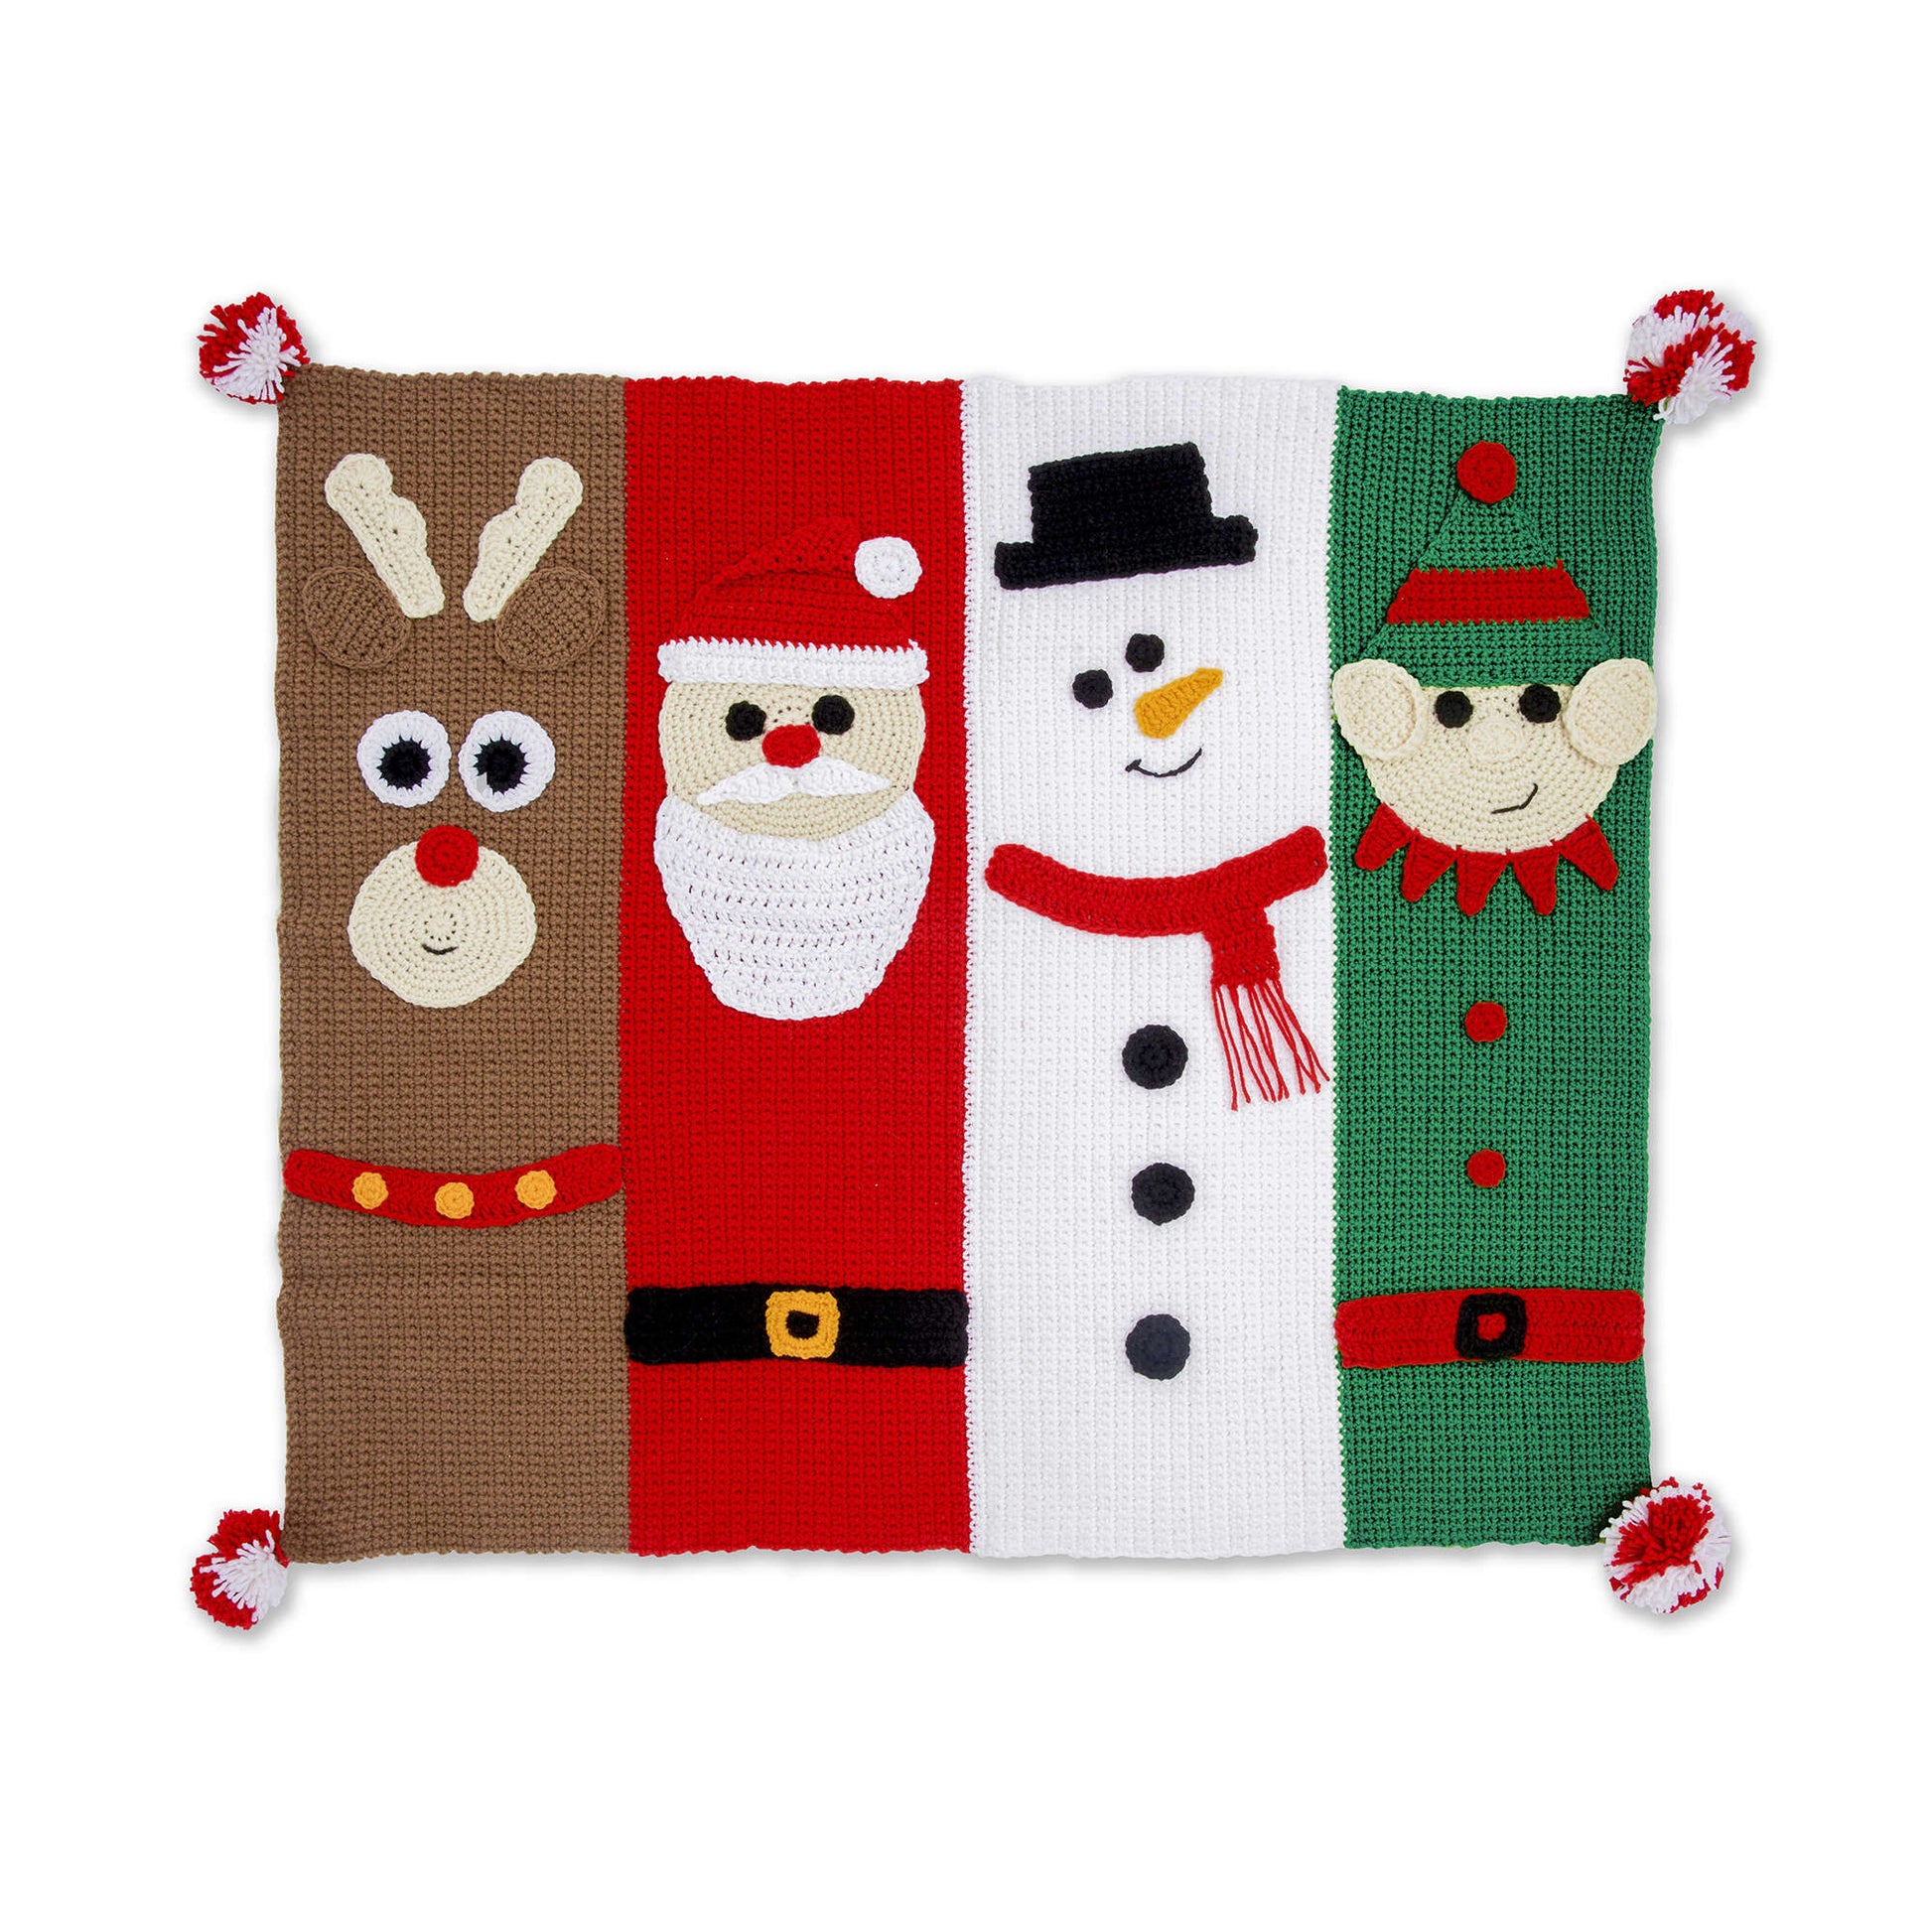 Christmas Characters Crochet Blanket Single Size